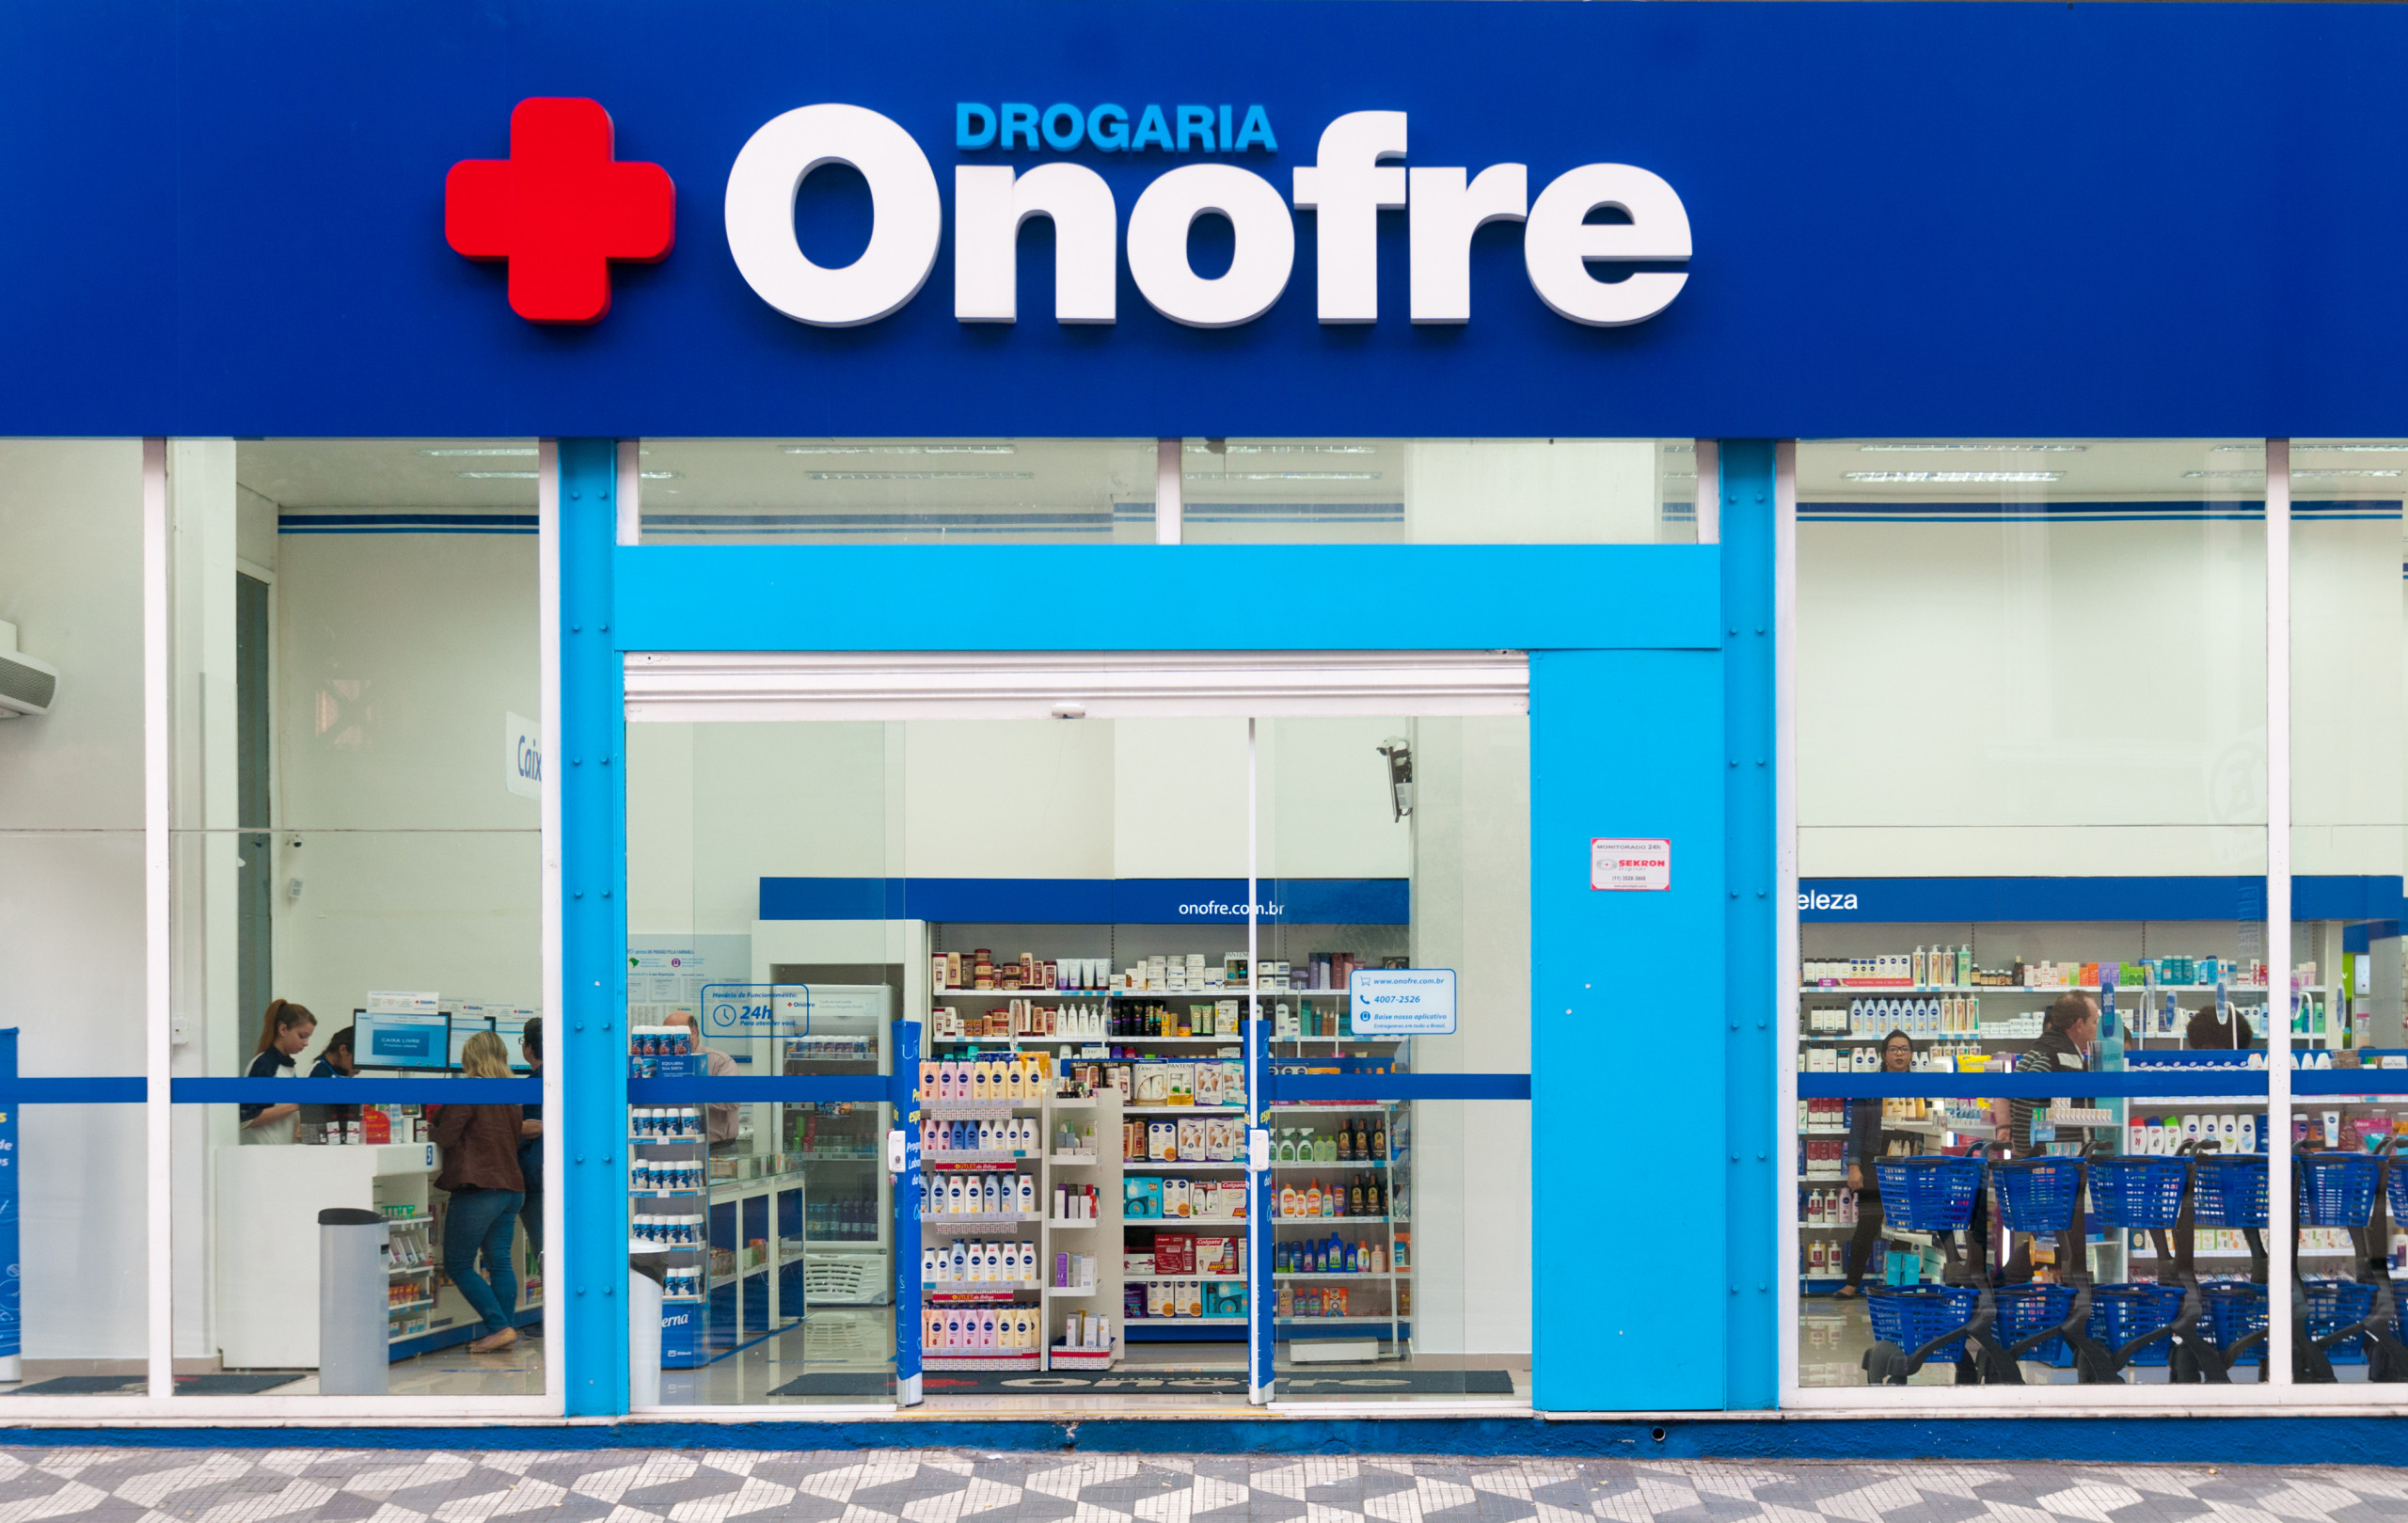 Gestão Raia Drogasil expande serviços de farmácias e lança mais um app